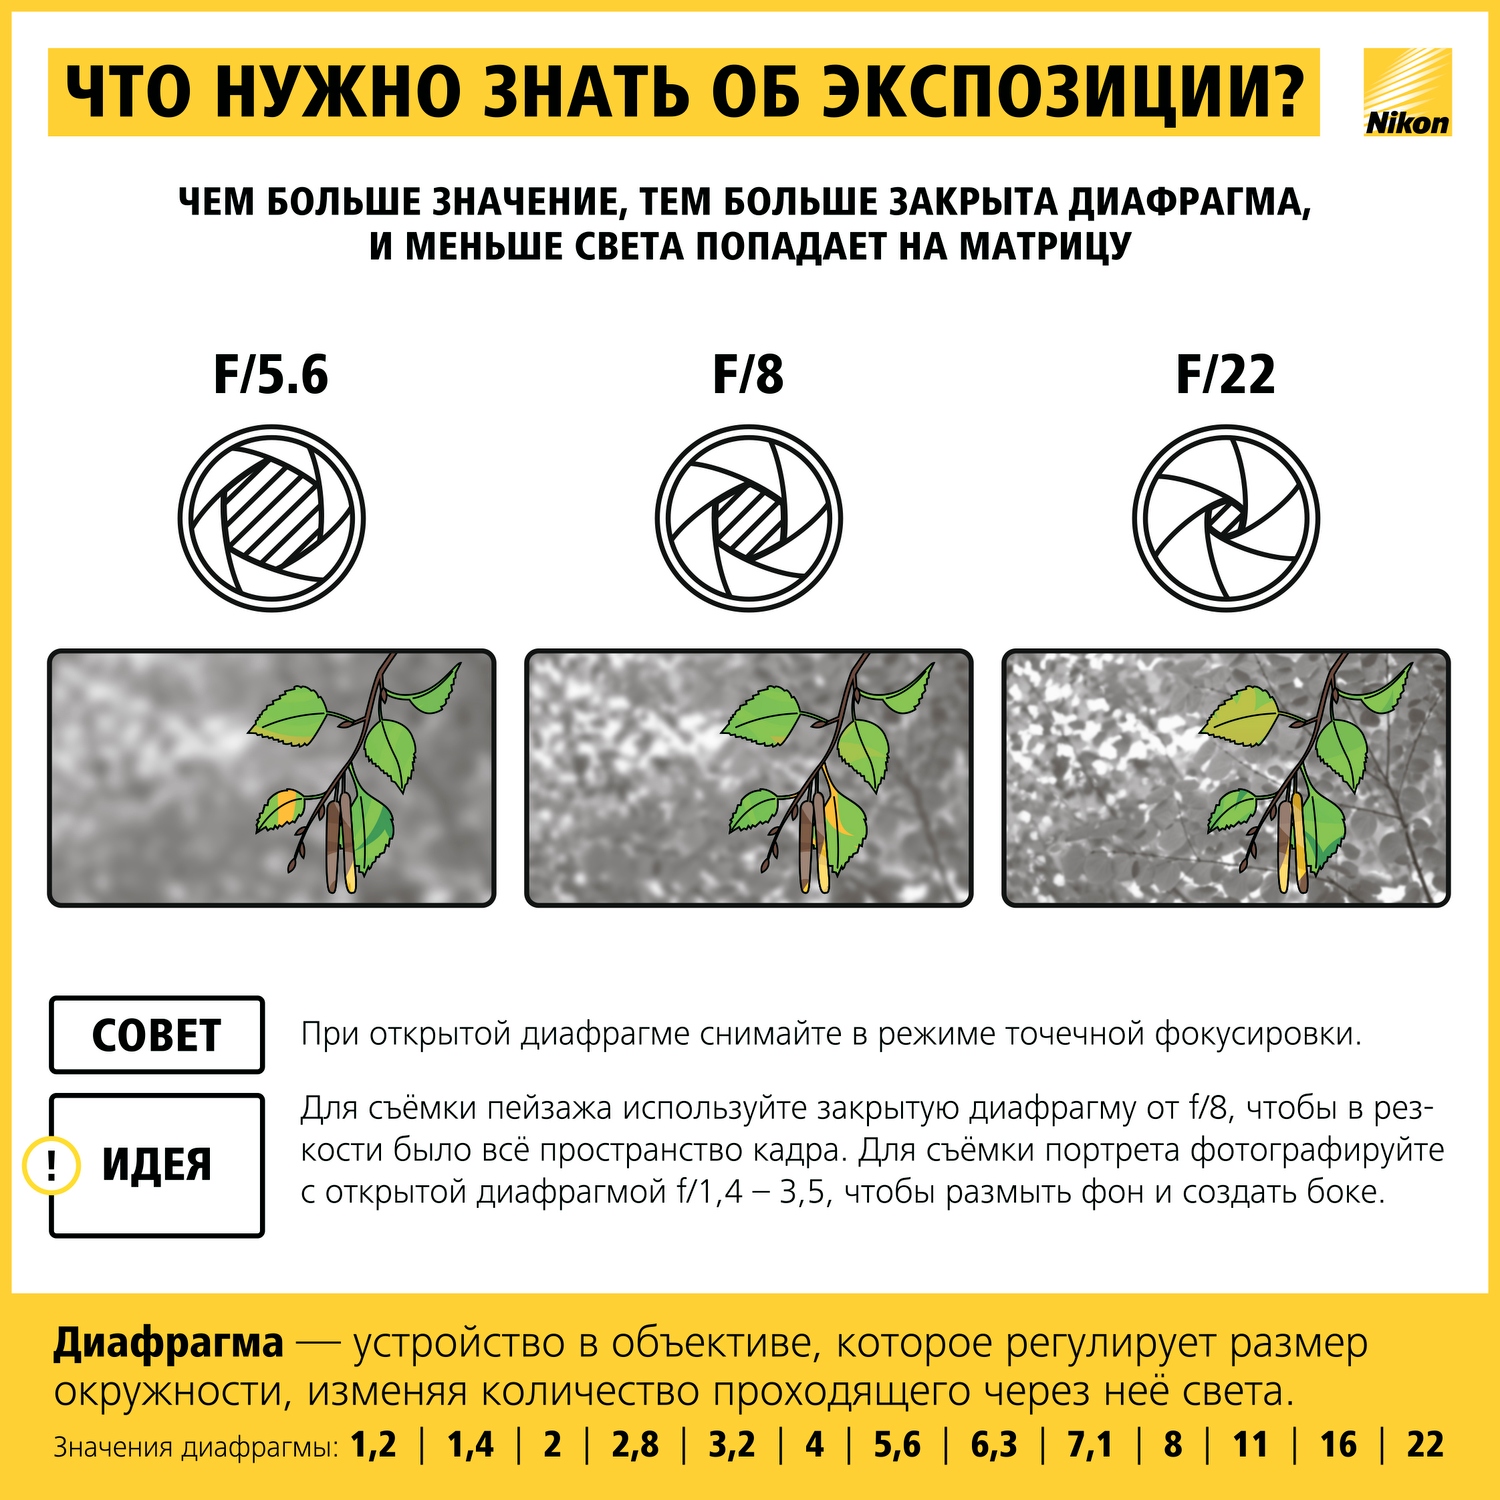 Как научиться фотографировать: пошаговая инструкция от Nikon Info_nikon_04